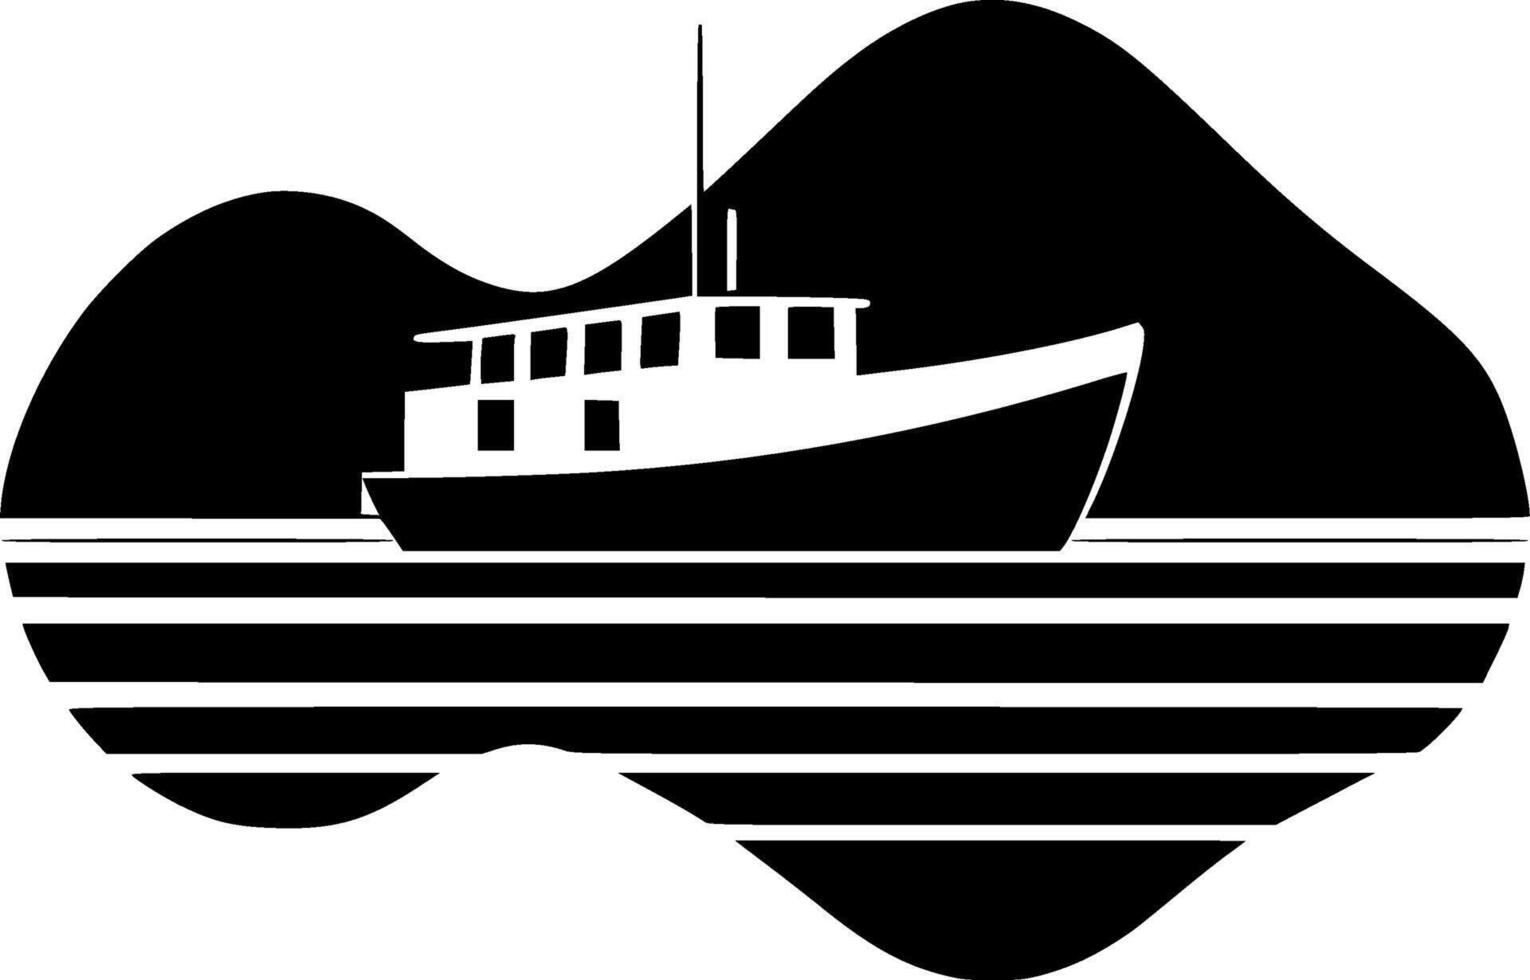 Boot, minimalistisch und einfach Silhouette - - Vektor Illustration